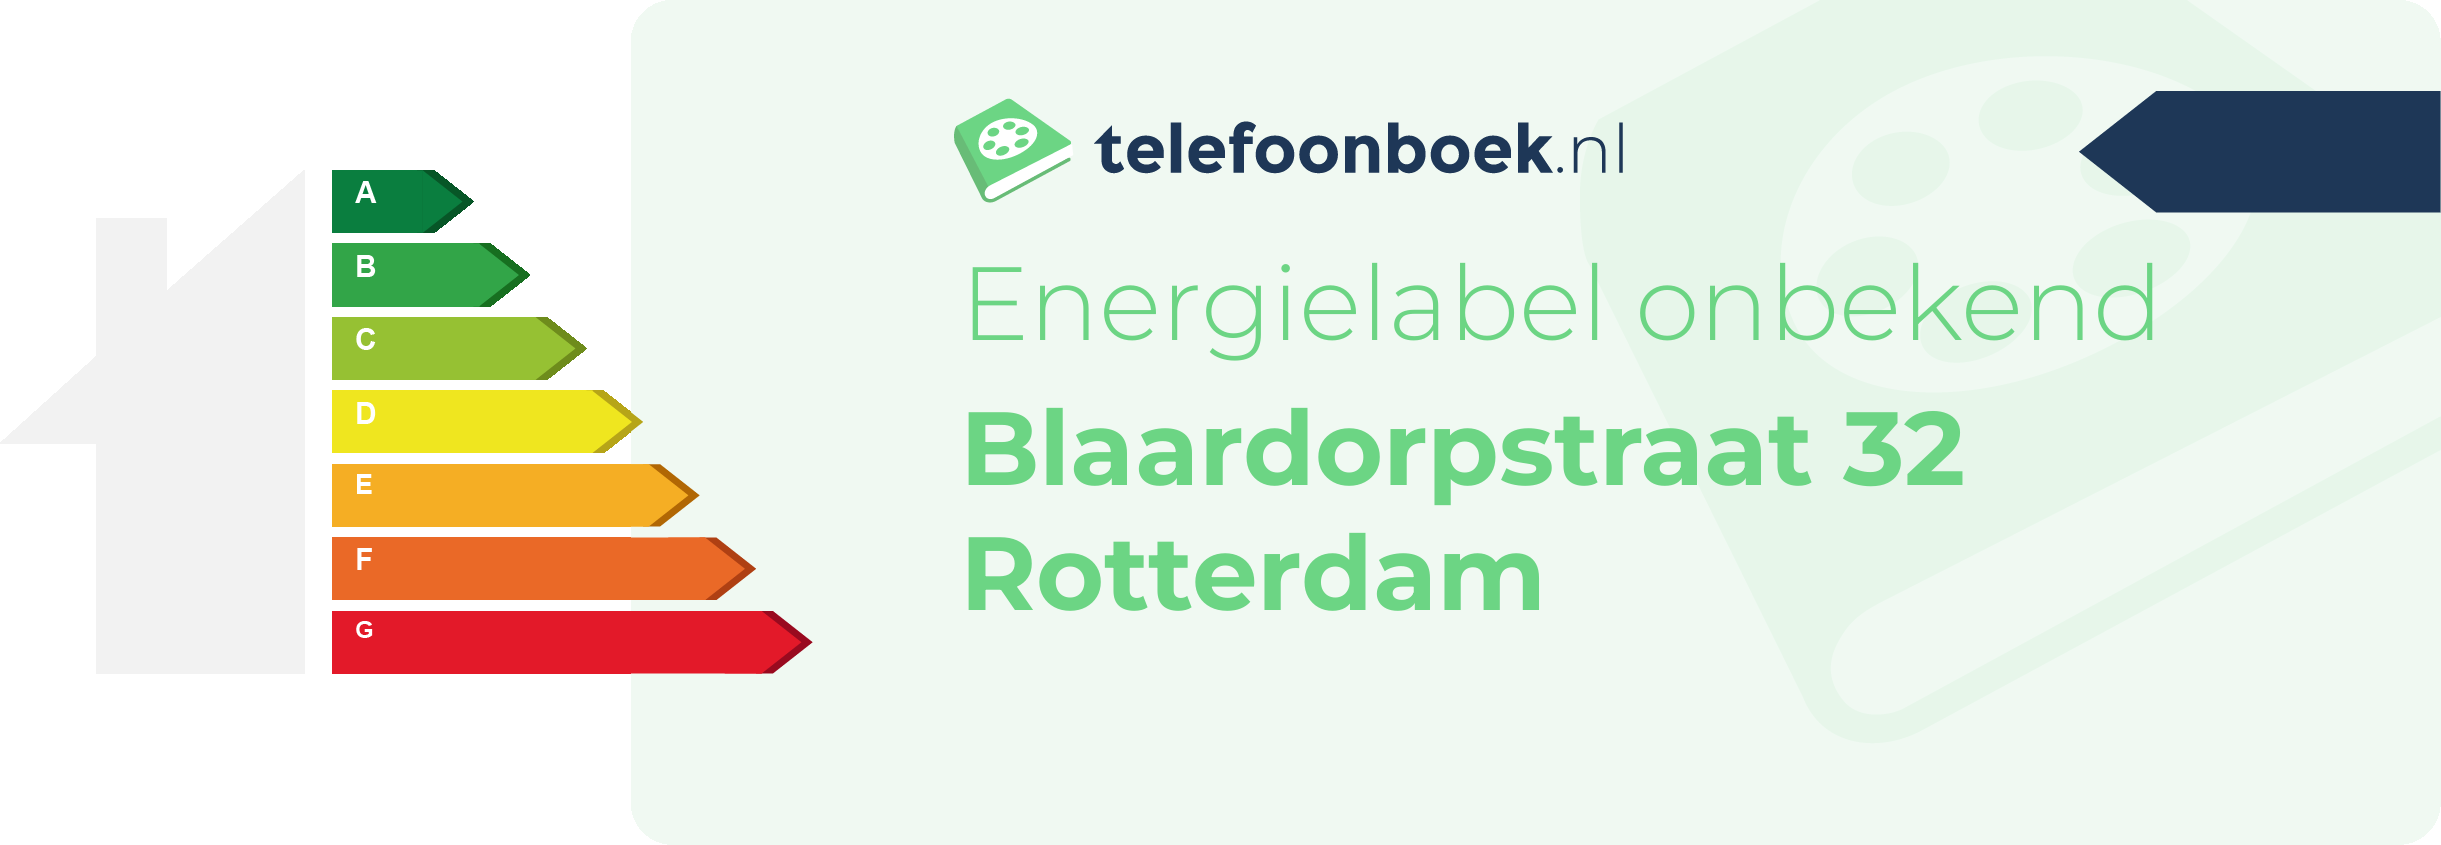 Energielabel Blaardorpstraat 32 Rotterdam